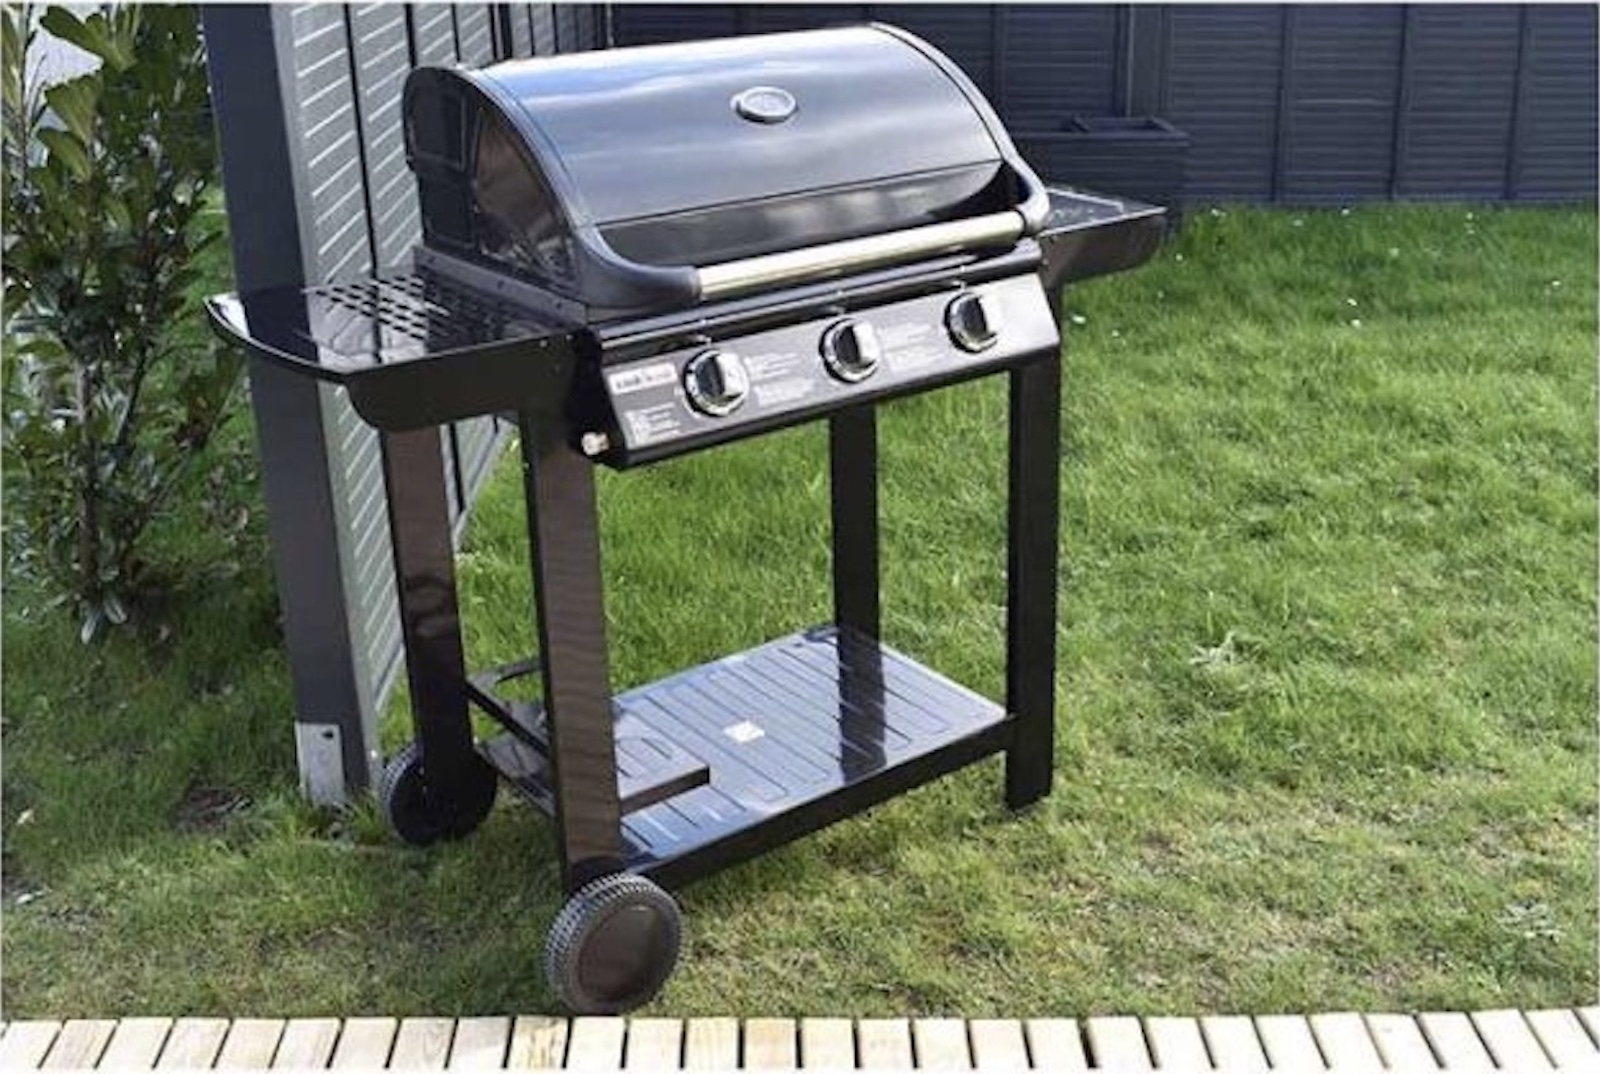 Pendant les soldes estivales, le barbecue gaz 3 brûleurs + plancha à petit prix chez ELECTRO DEPOT. (Source :&nbsp;ELECTRO DEPOT)